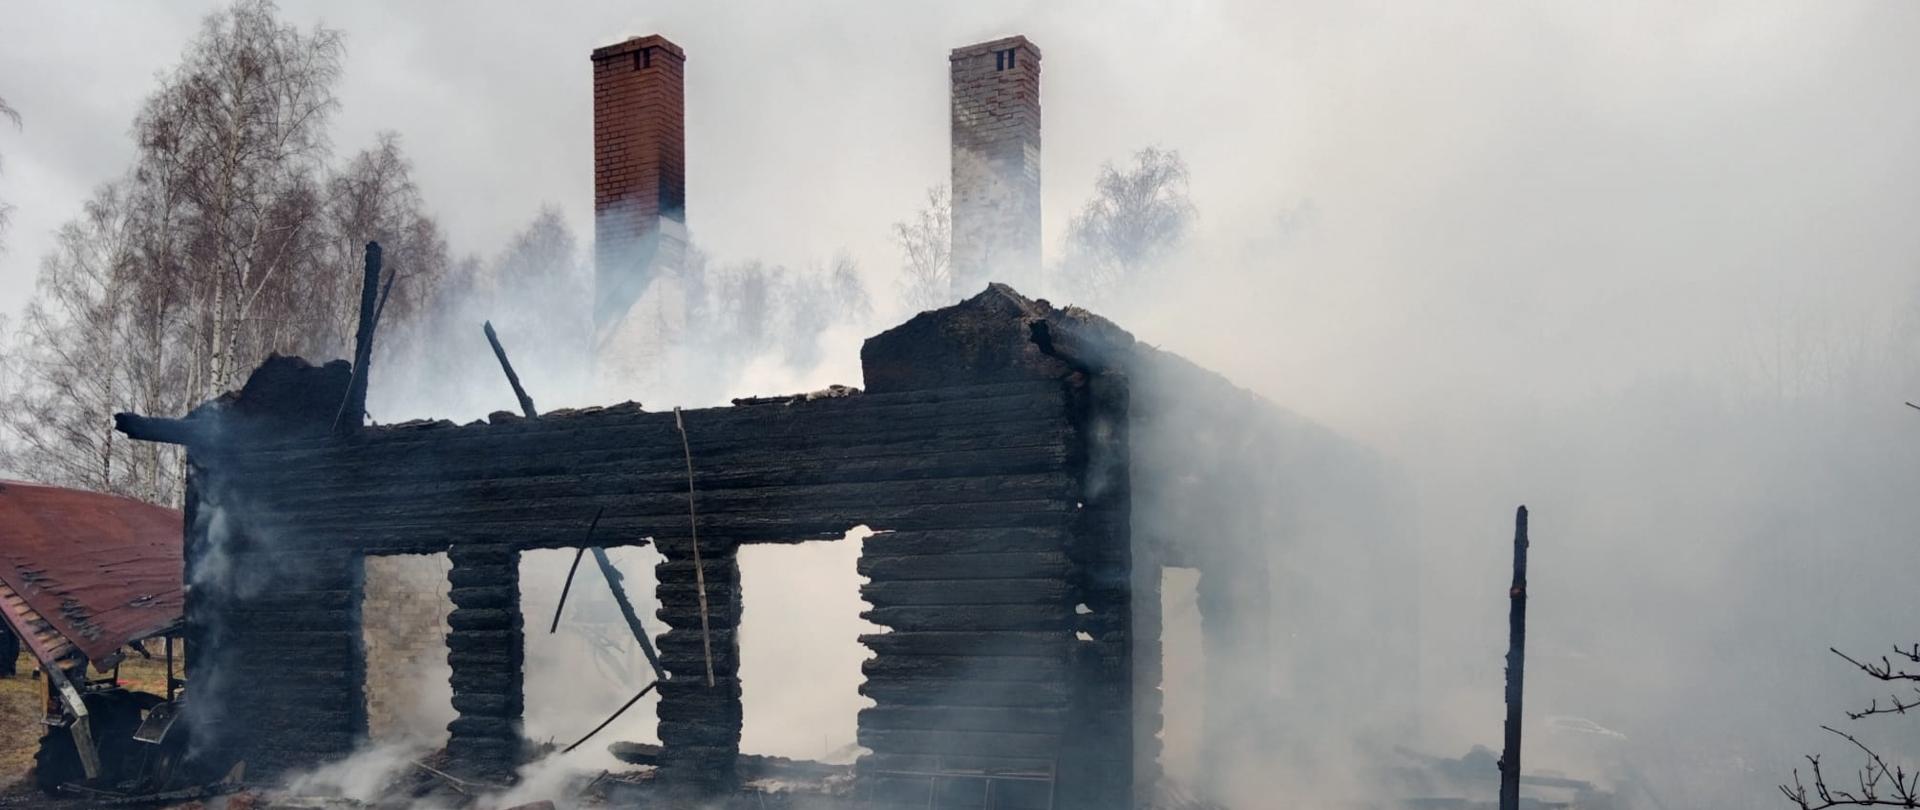 Widok na spalony drewniany budynek mieszkalny. Wokół niego kłęby dymu.